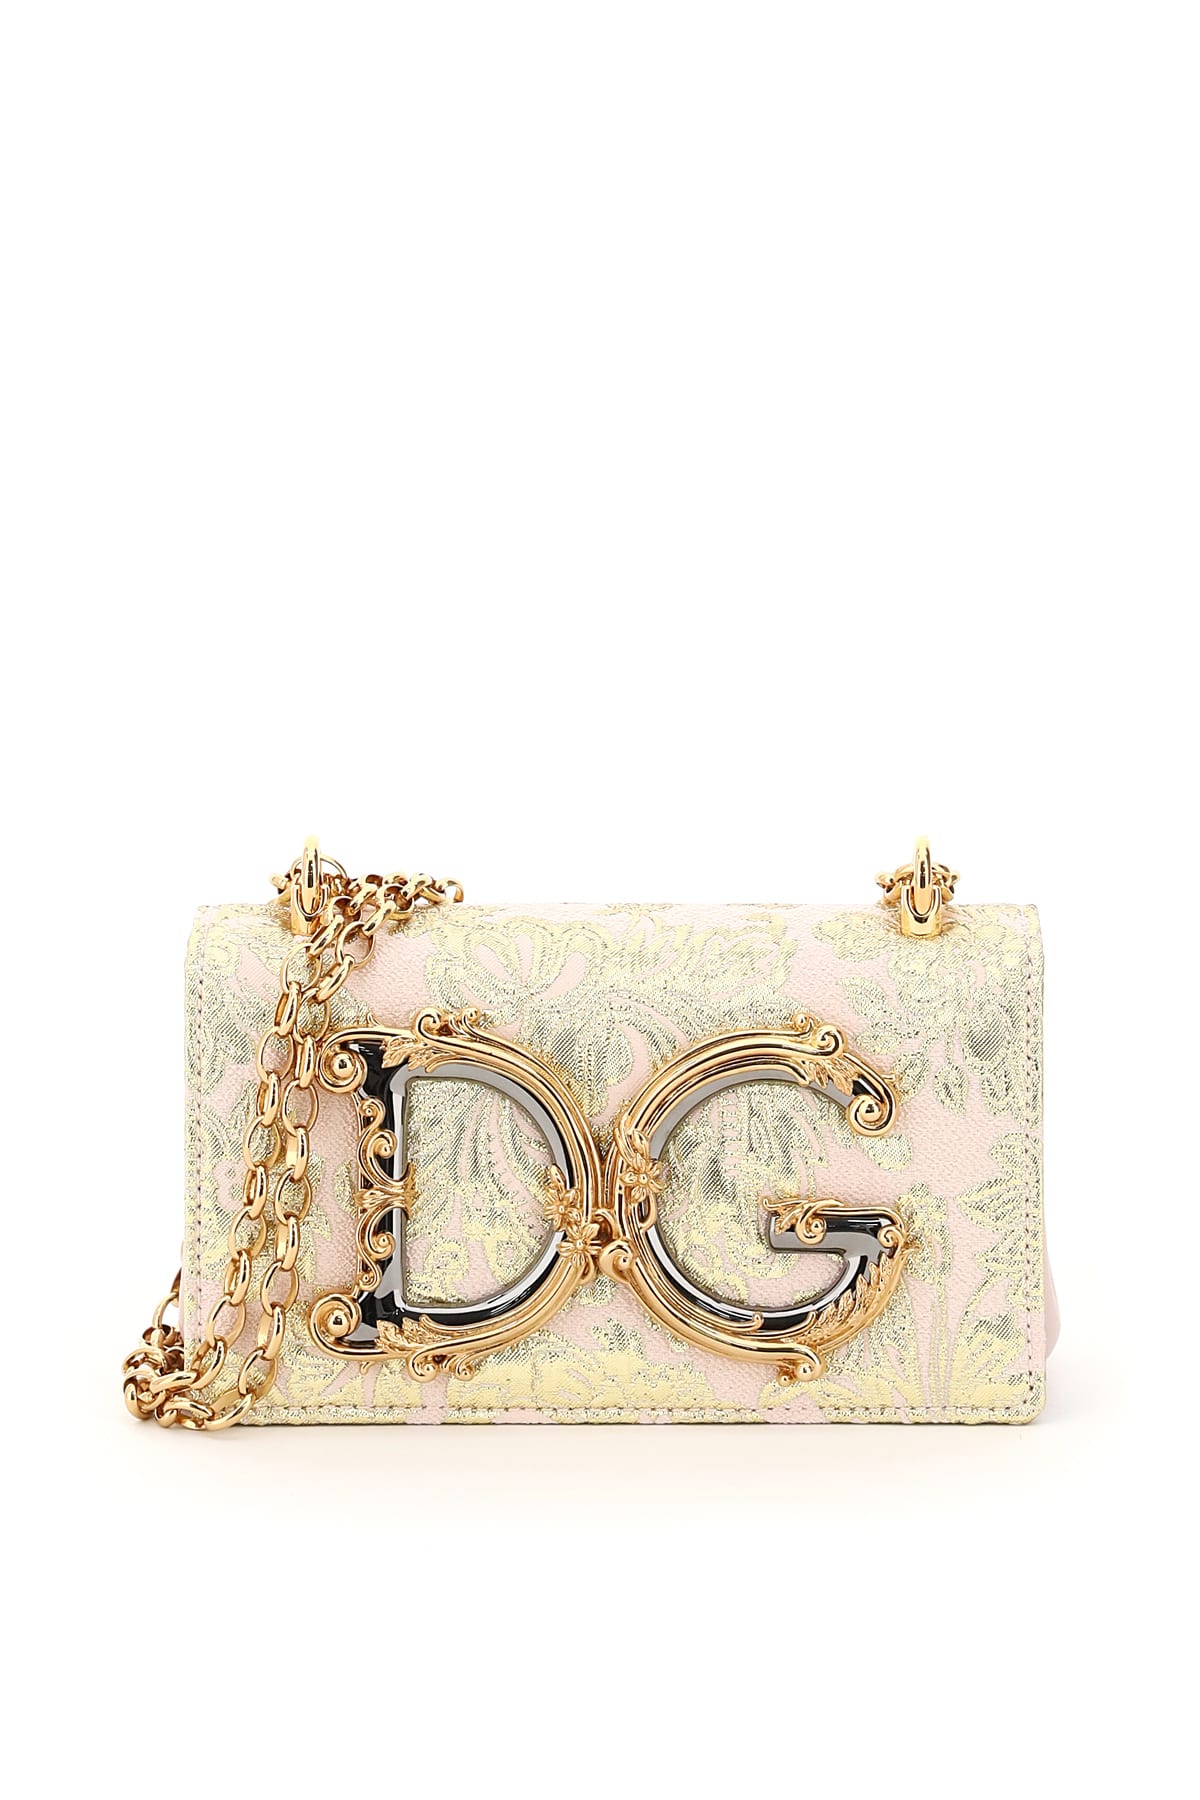 Dolce & Gabbana Lame dg Girls Brocade Shoulder Bag